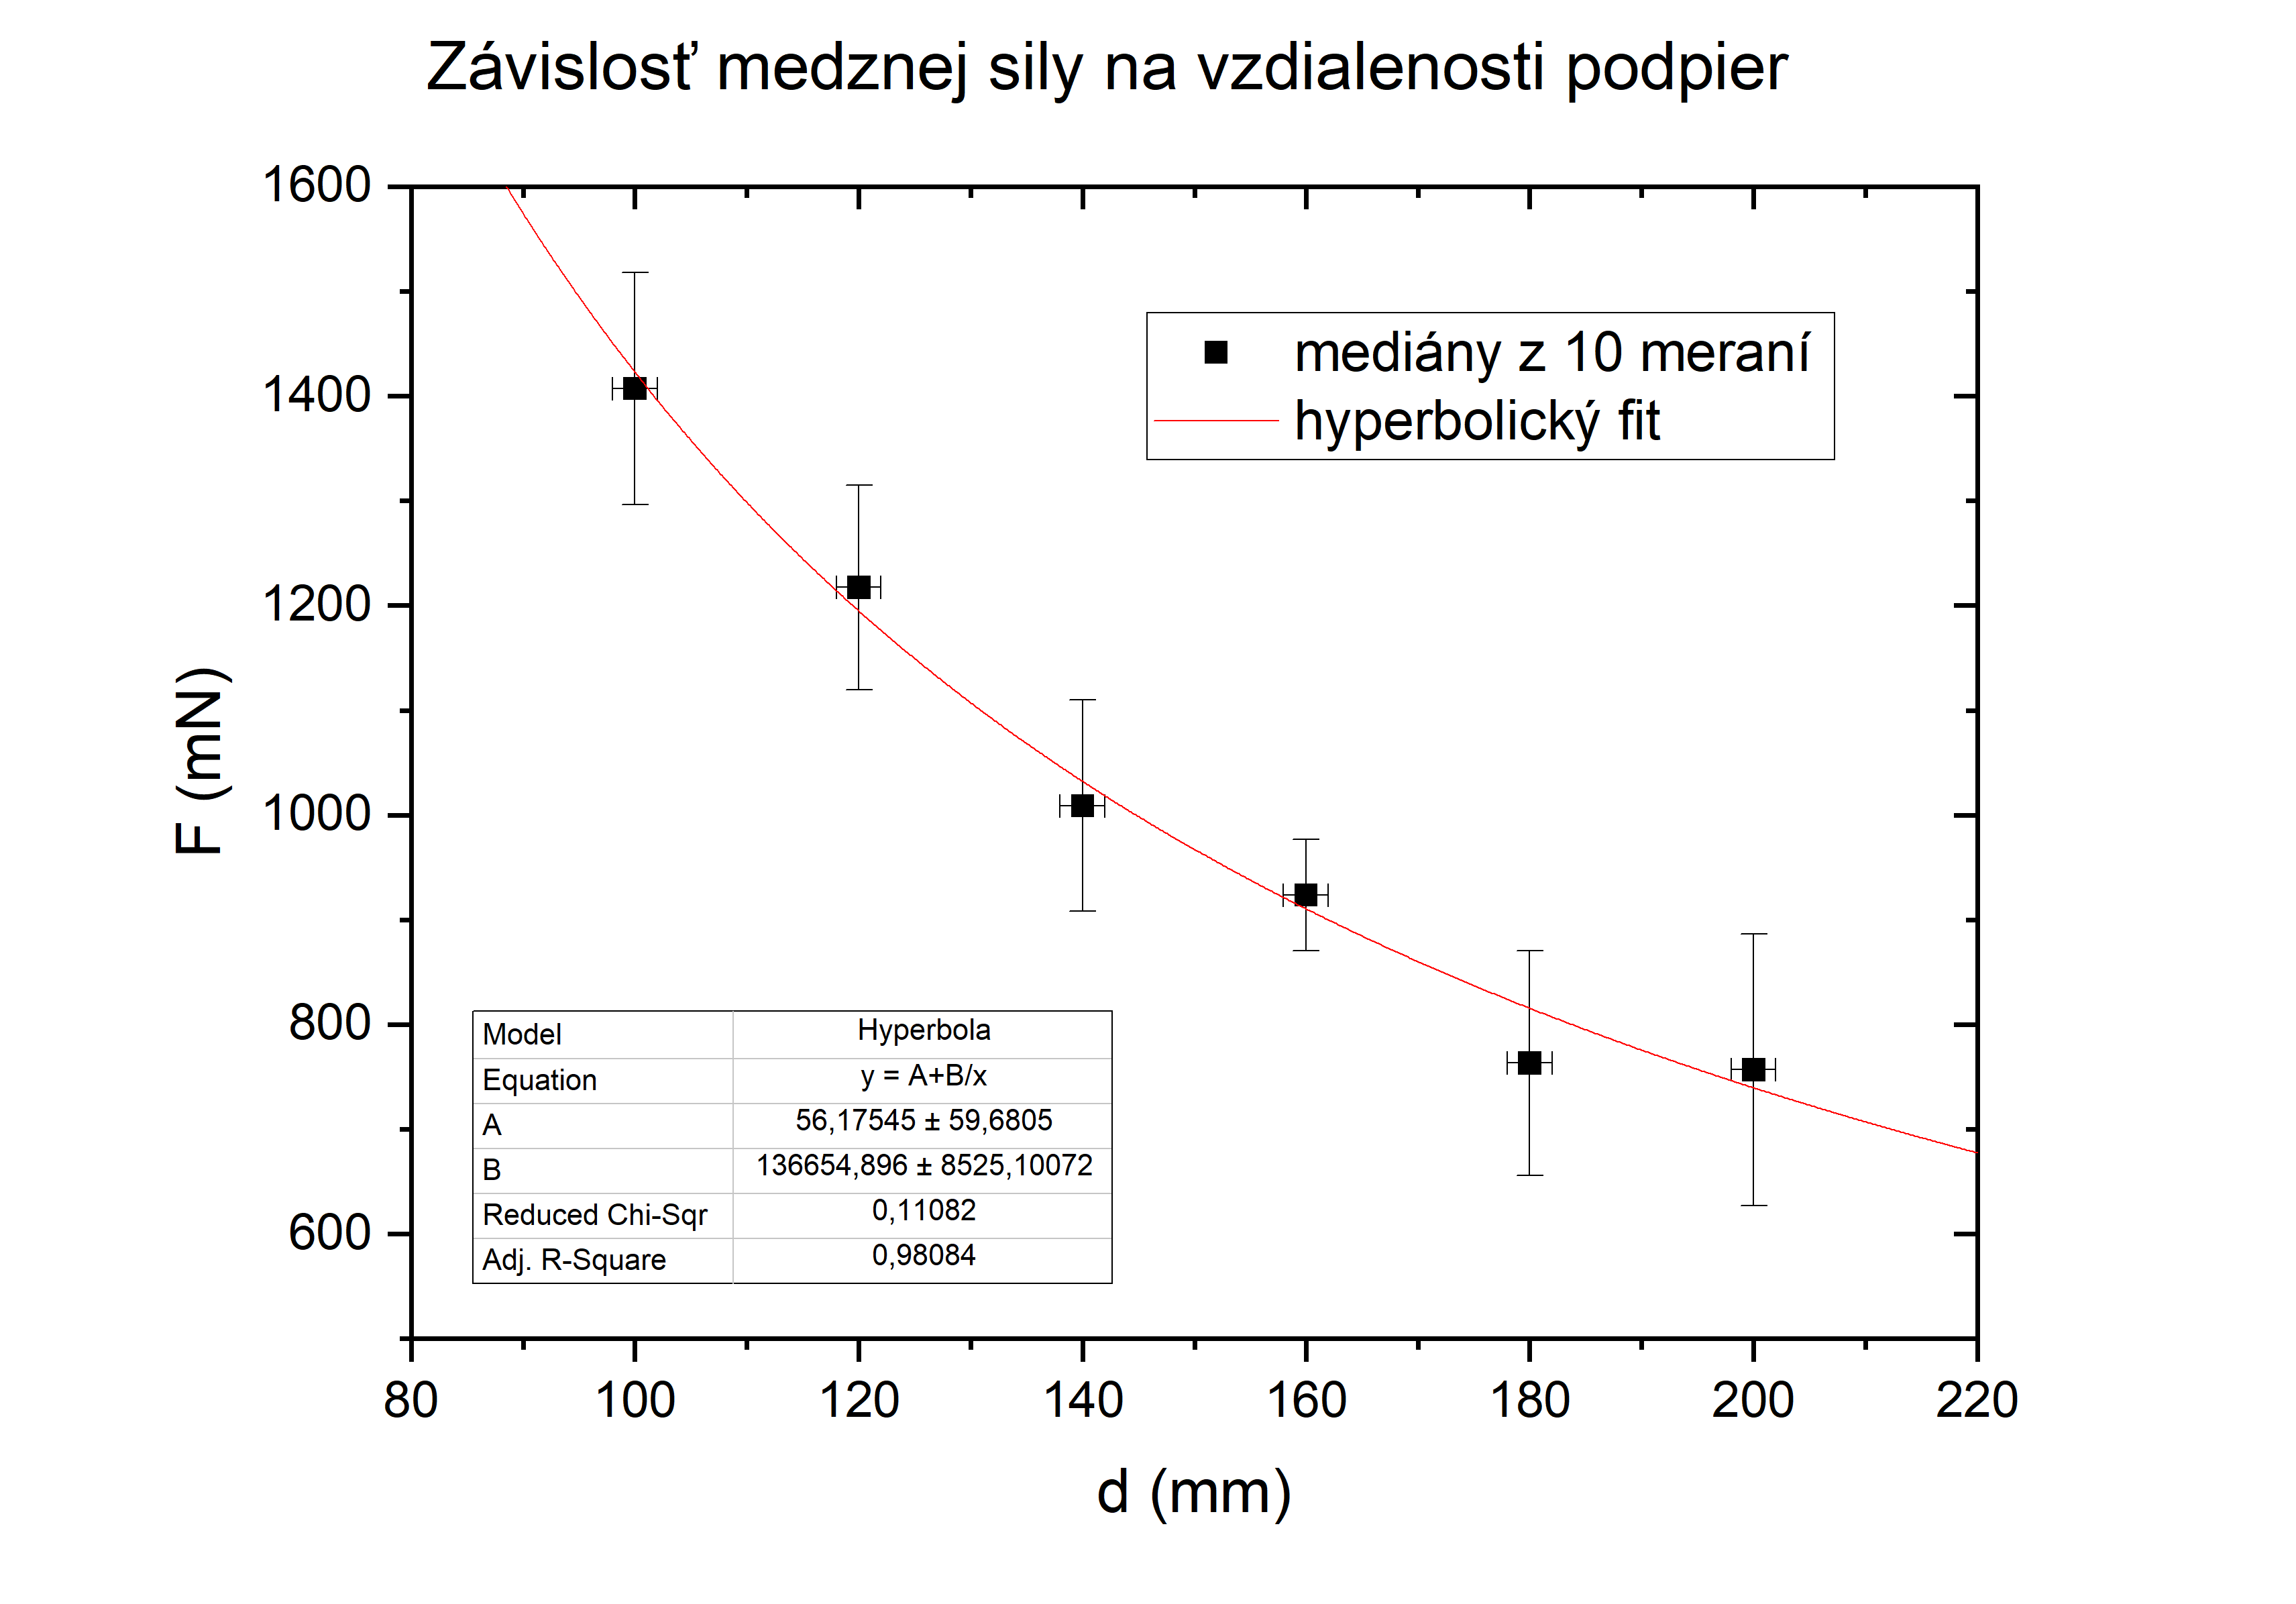 Figure 2: Závislosť medznej sily na vzdialenosti podpier